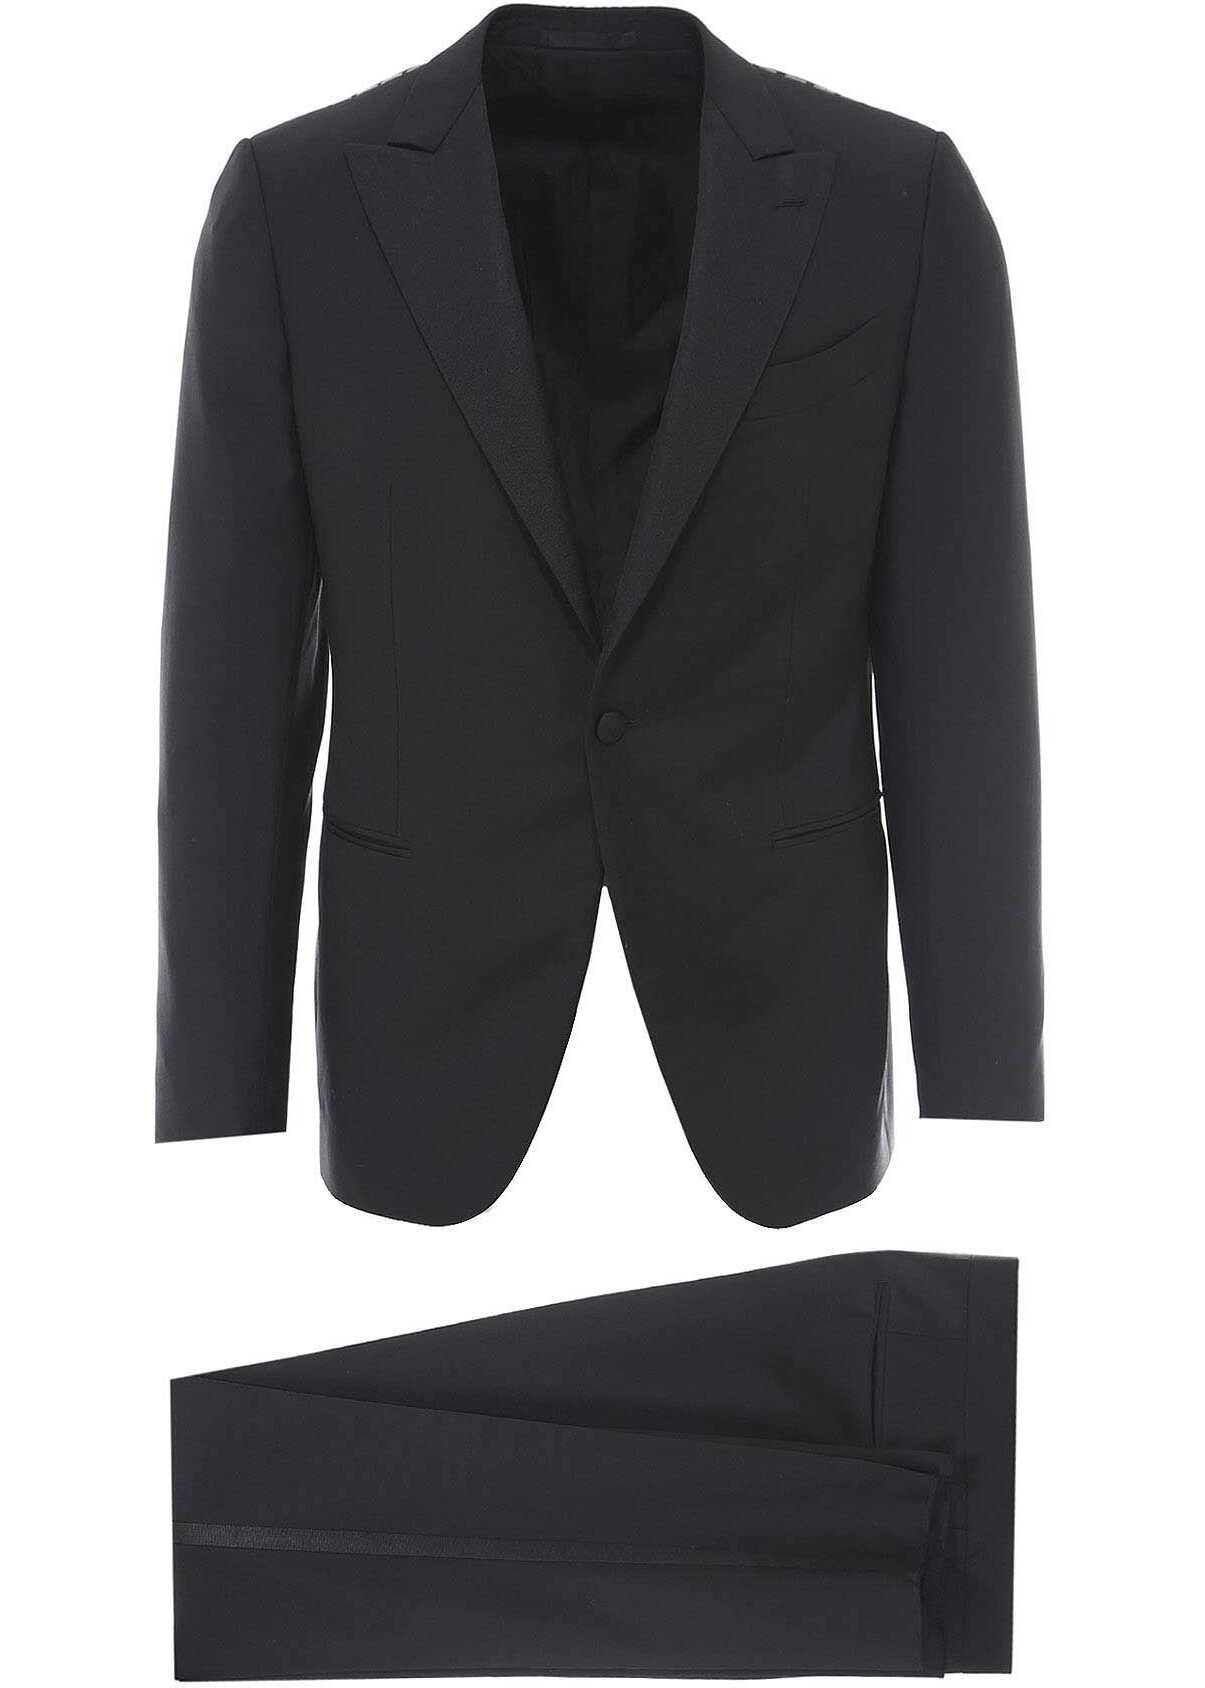 CARUSO Suit Black b-mall.ro